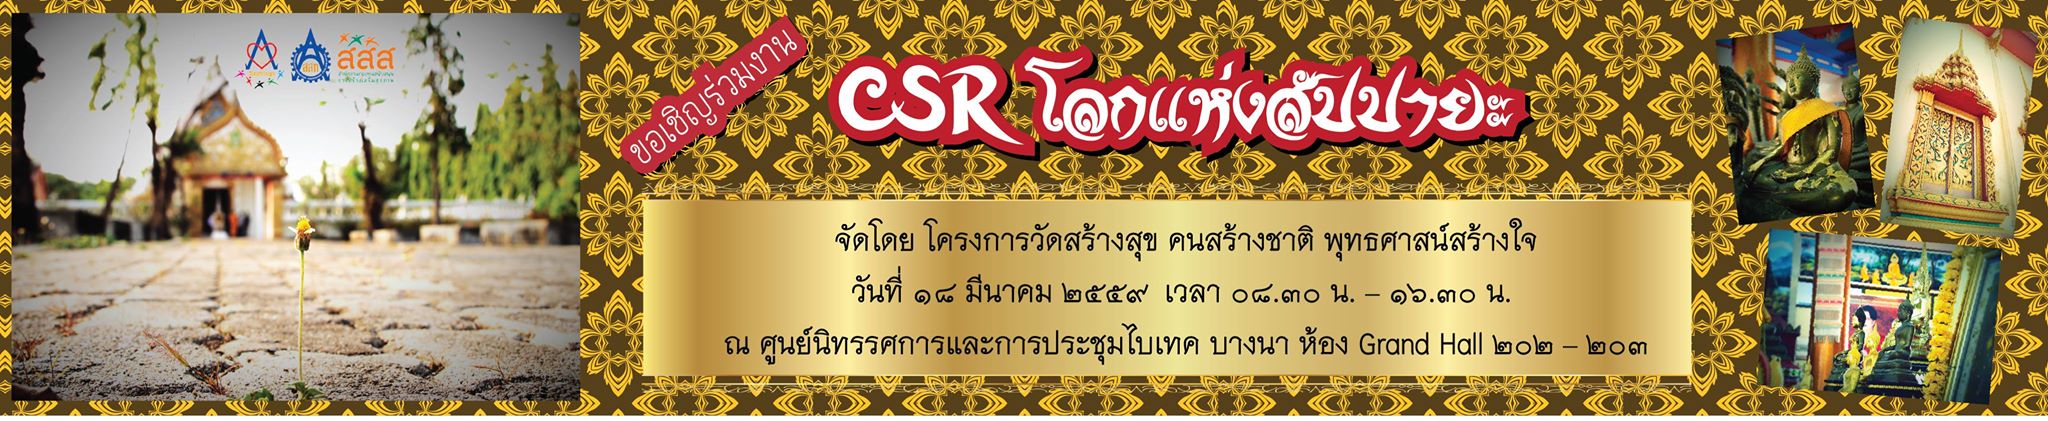 CSR “โลกแห่งสัปปายะ” ส่งเสริมวัดสร้างสุข thaihealth